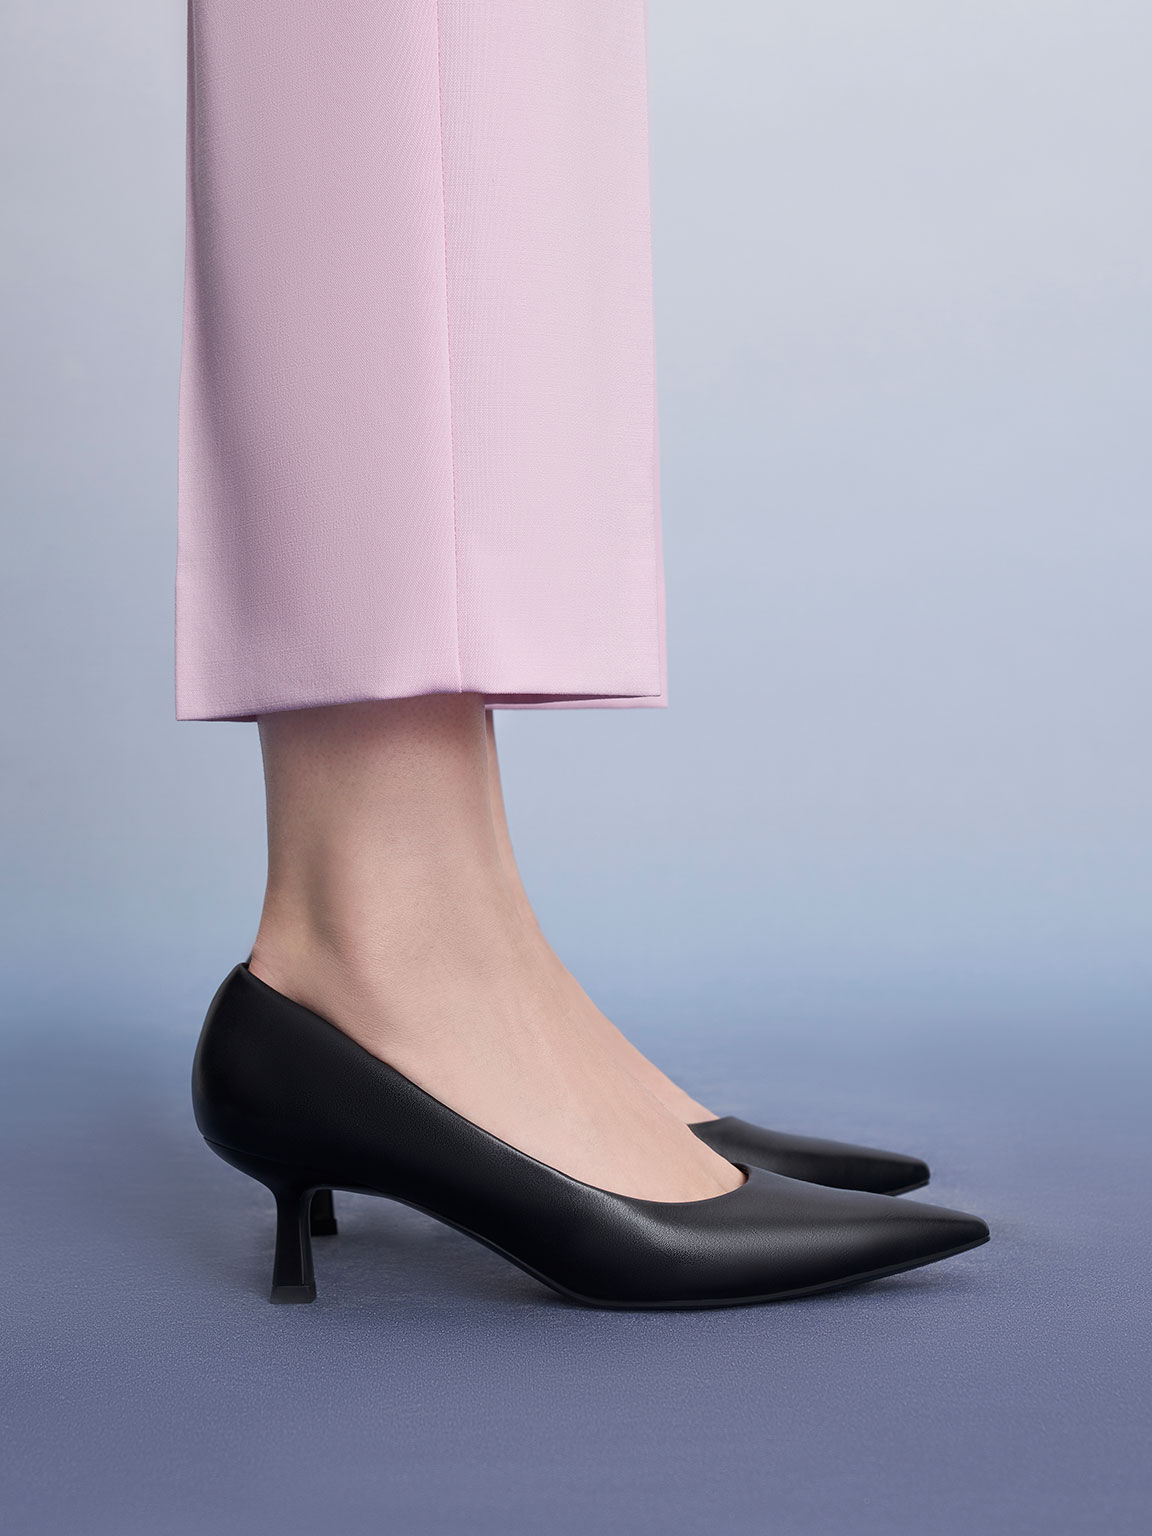 Elegant Burgundy Pearl Low Heel Wedding Shoes 2020 Leather Suede 3 cm Low  Heels / Kitten Heels Pointed Toe